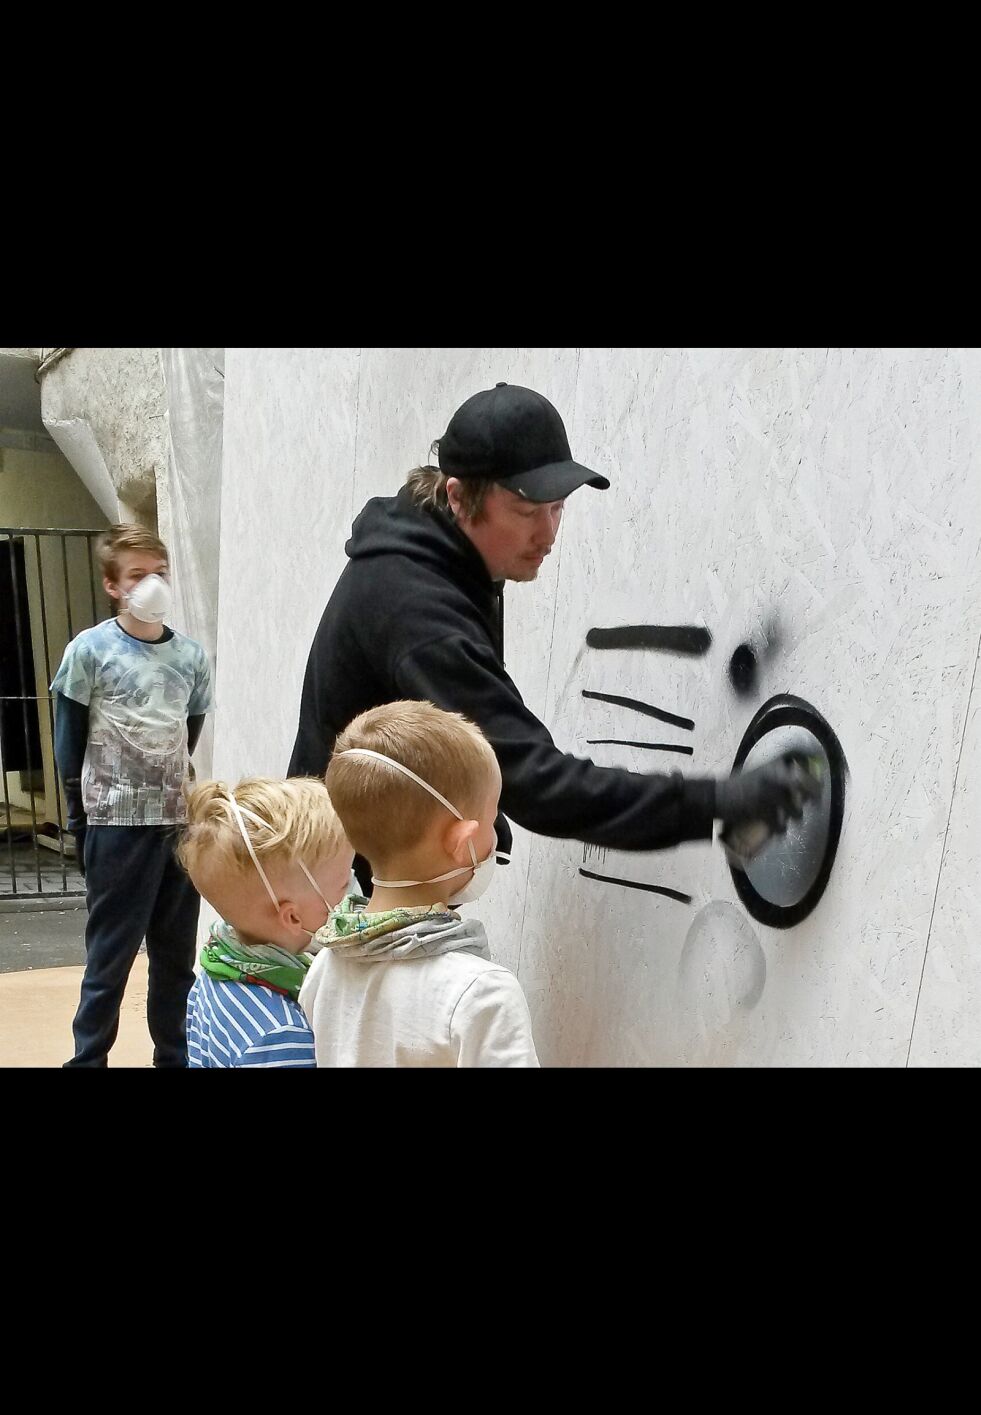 Anders Sunna lærte villig vekk bort sine kunnskaper om graffiti til sju unge deltakere på workshop i Oslo. Her er det Eirik og Thomas (over) som følger nøye med.
 Foto: Raisa Porsanger